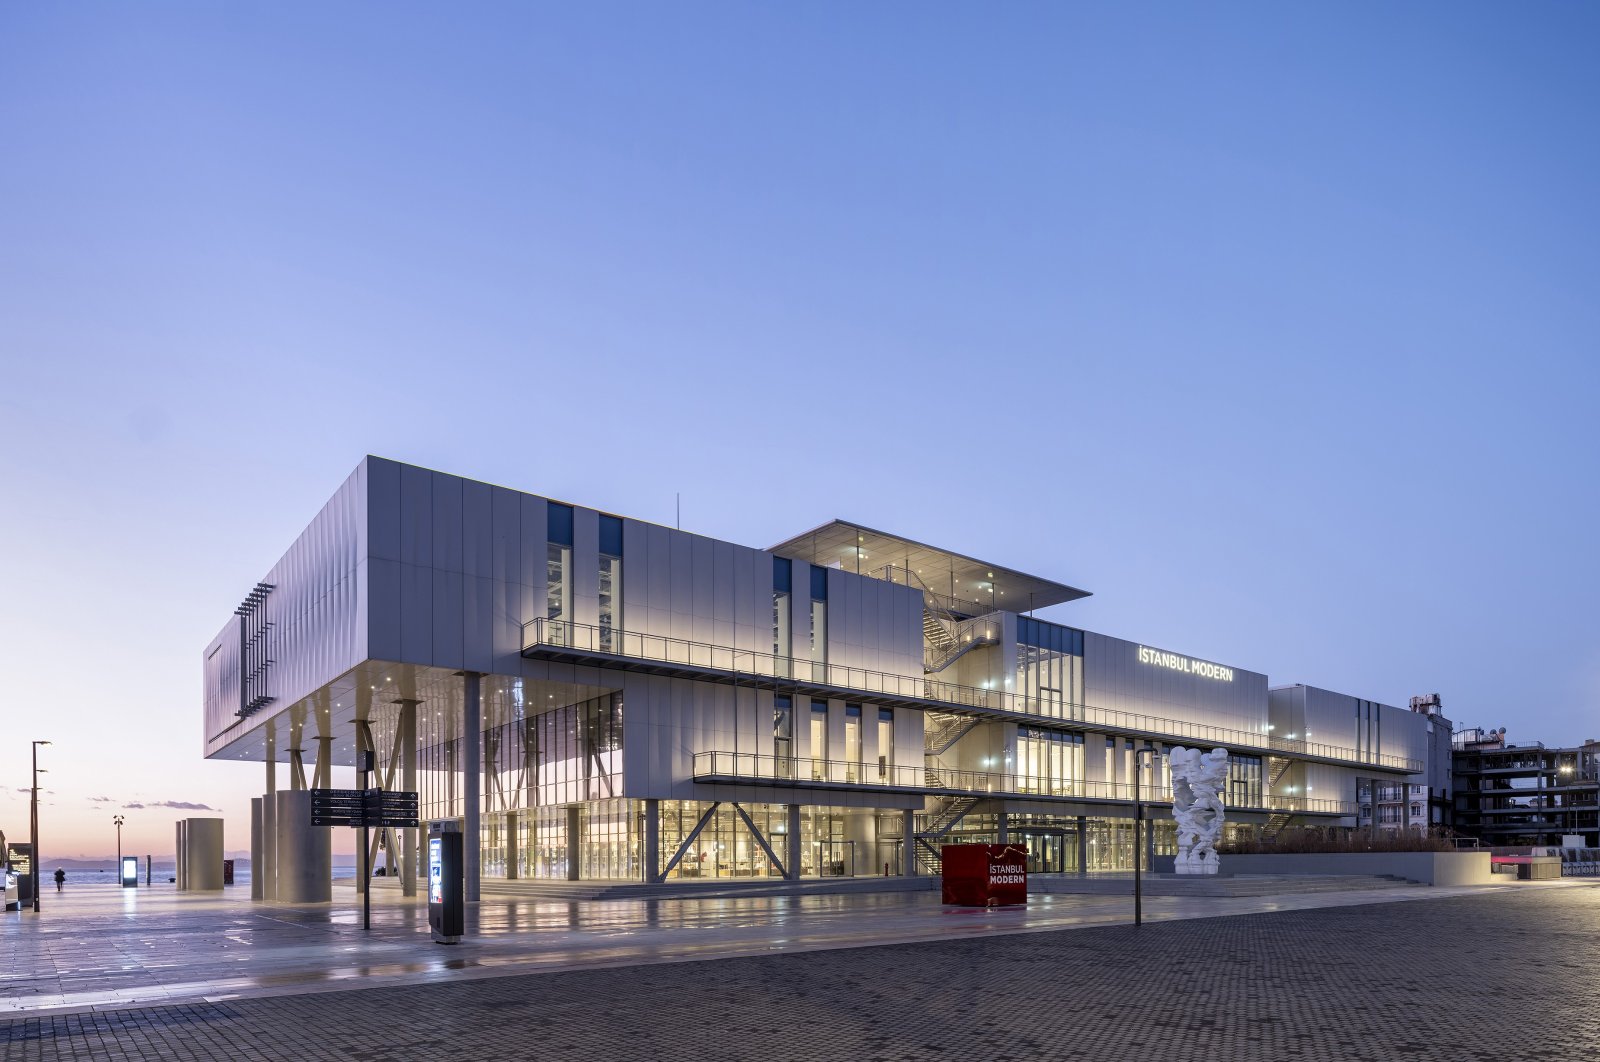 Karya baru Arsitek Renzo Piano ‘Istanbul Modern’ dibuka kembali